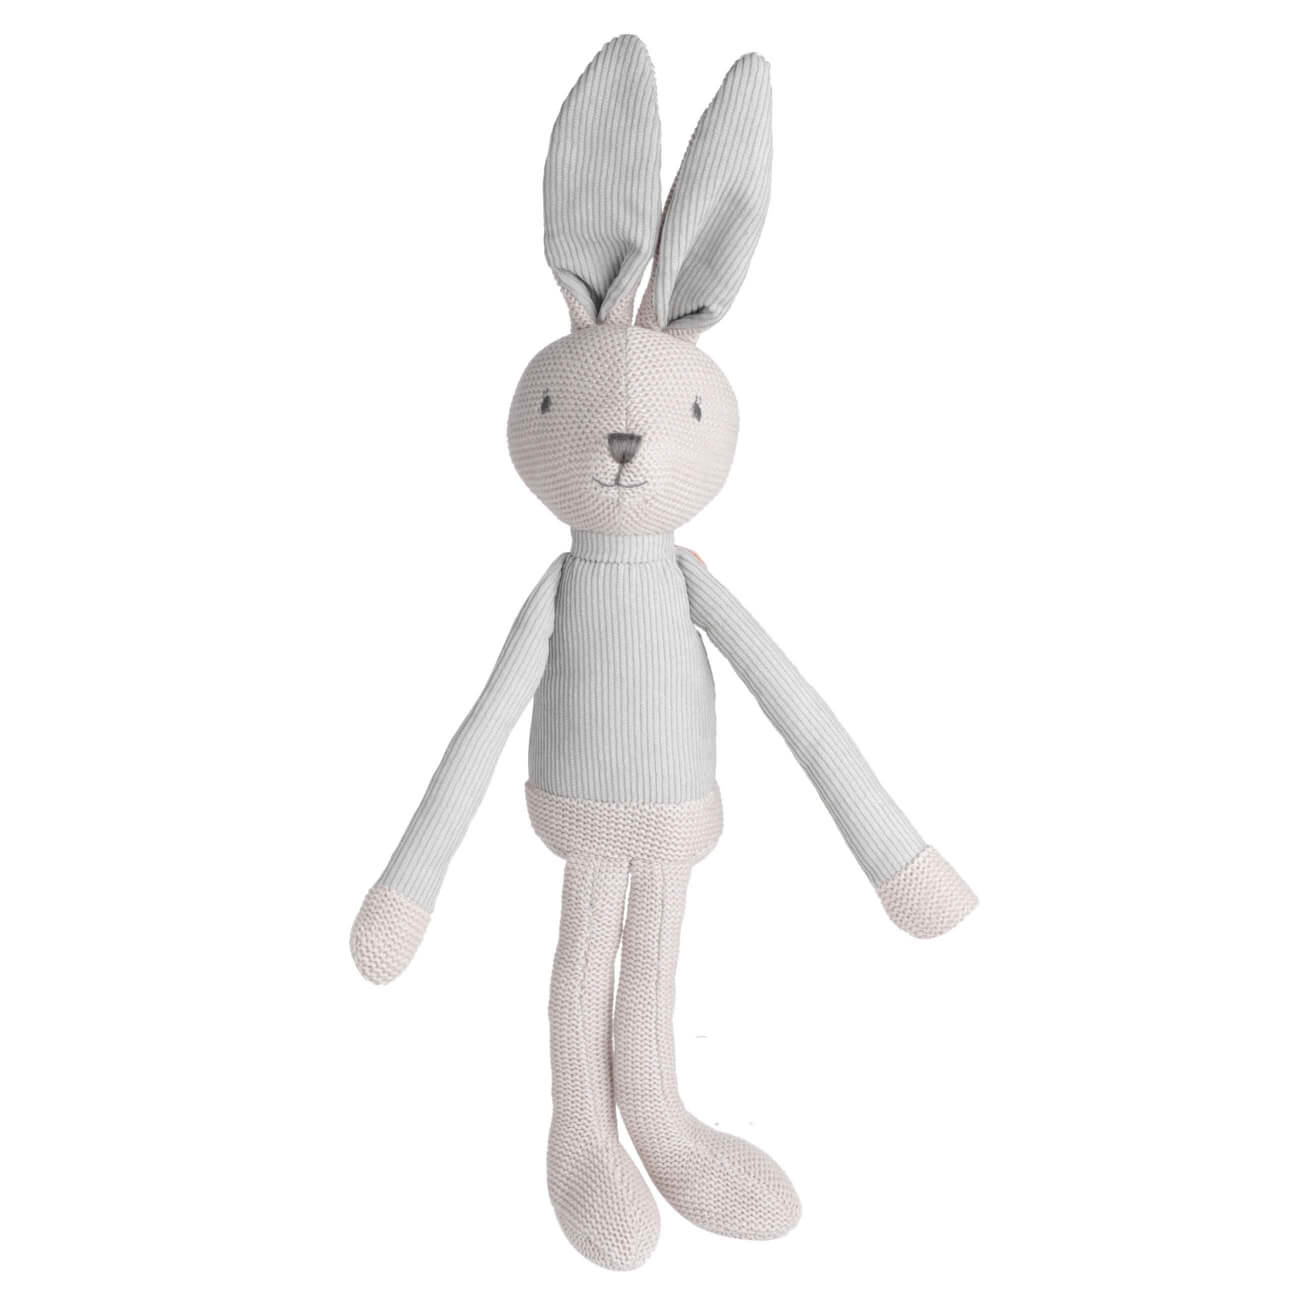 Игрушка, 35 см, мягкая, хлопок, бежевая, Заяц в костюме, Rabbit мягкая игрушка кукла в костюме 12 см микс